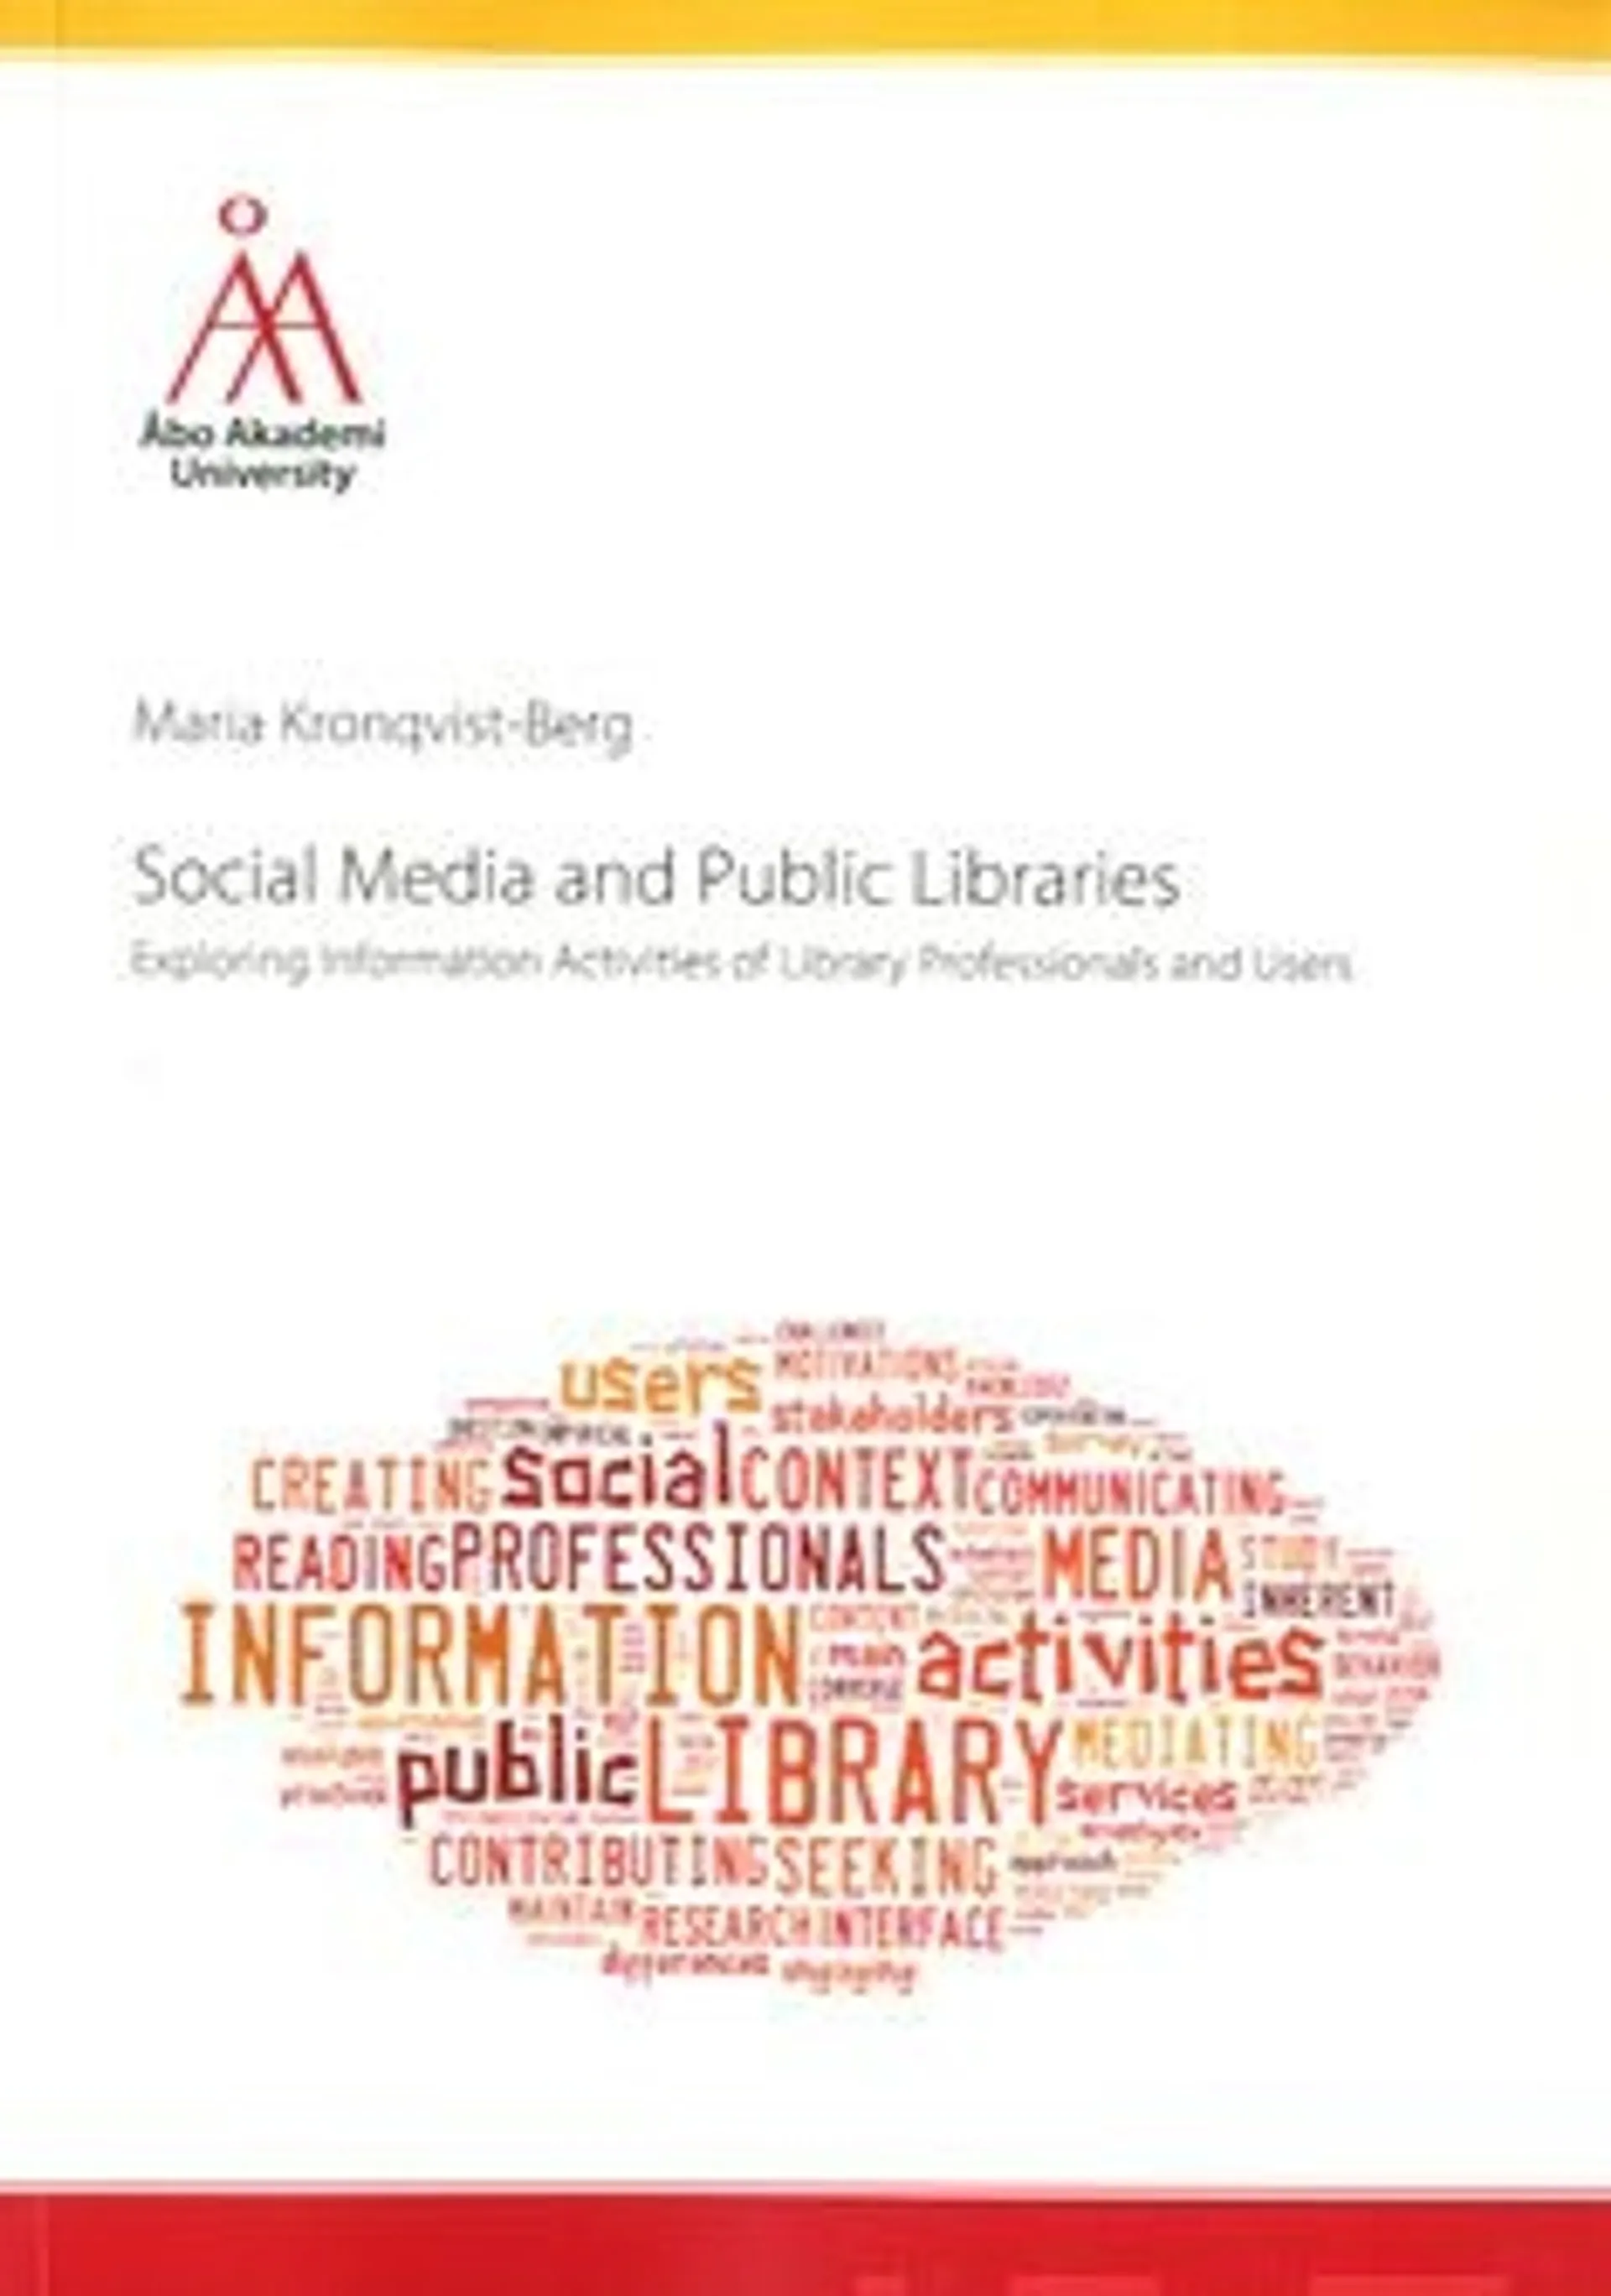 Kronqvist-Berg, Social Media and Public Libraries